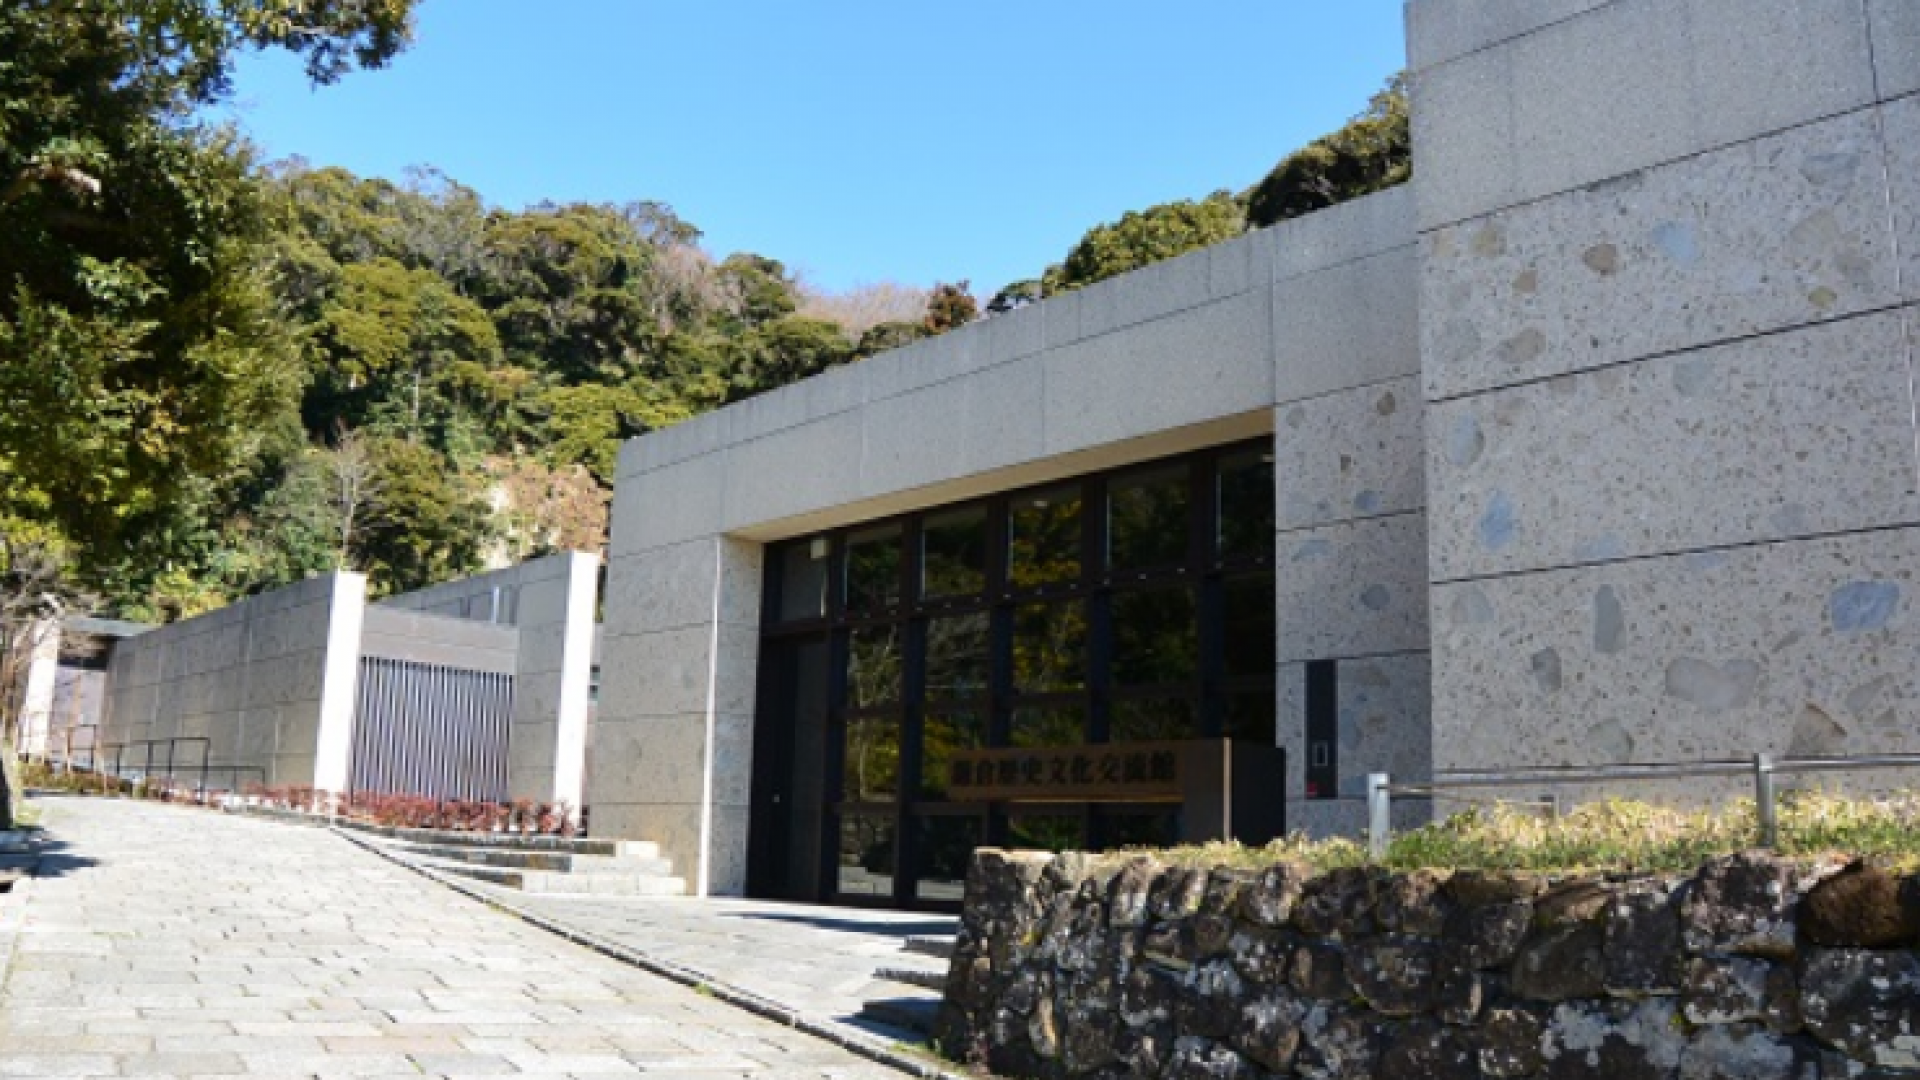 Kamakura Museum für Geschichte und Kultur